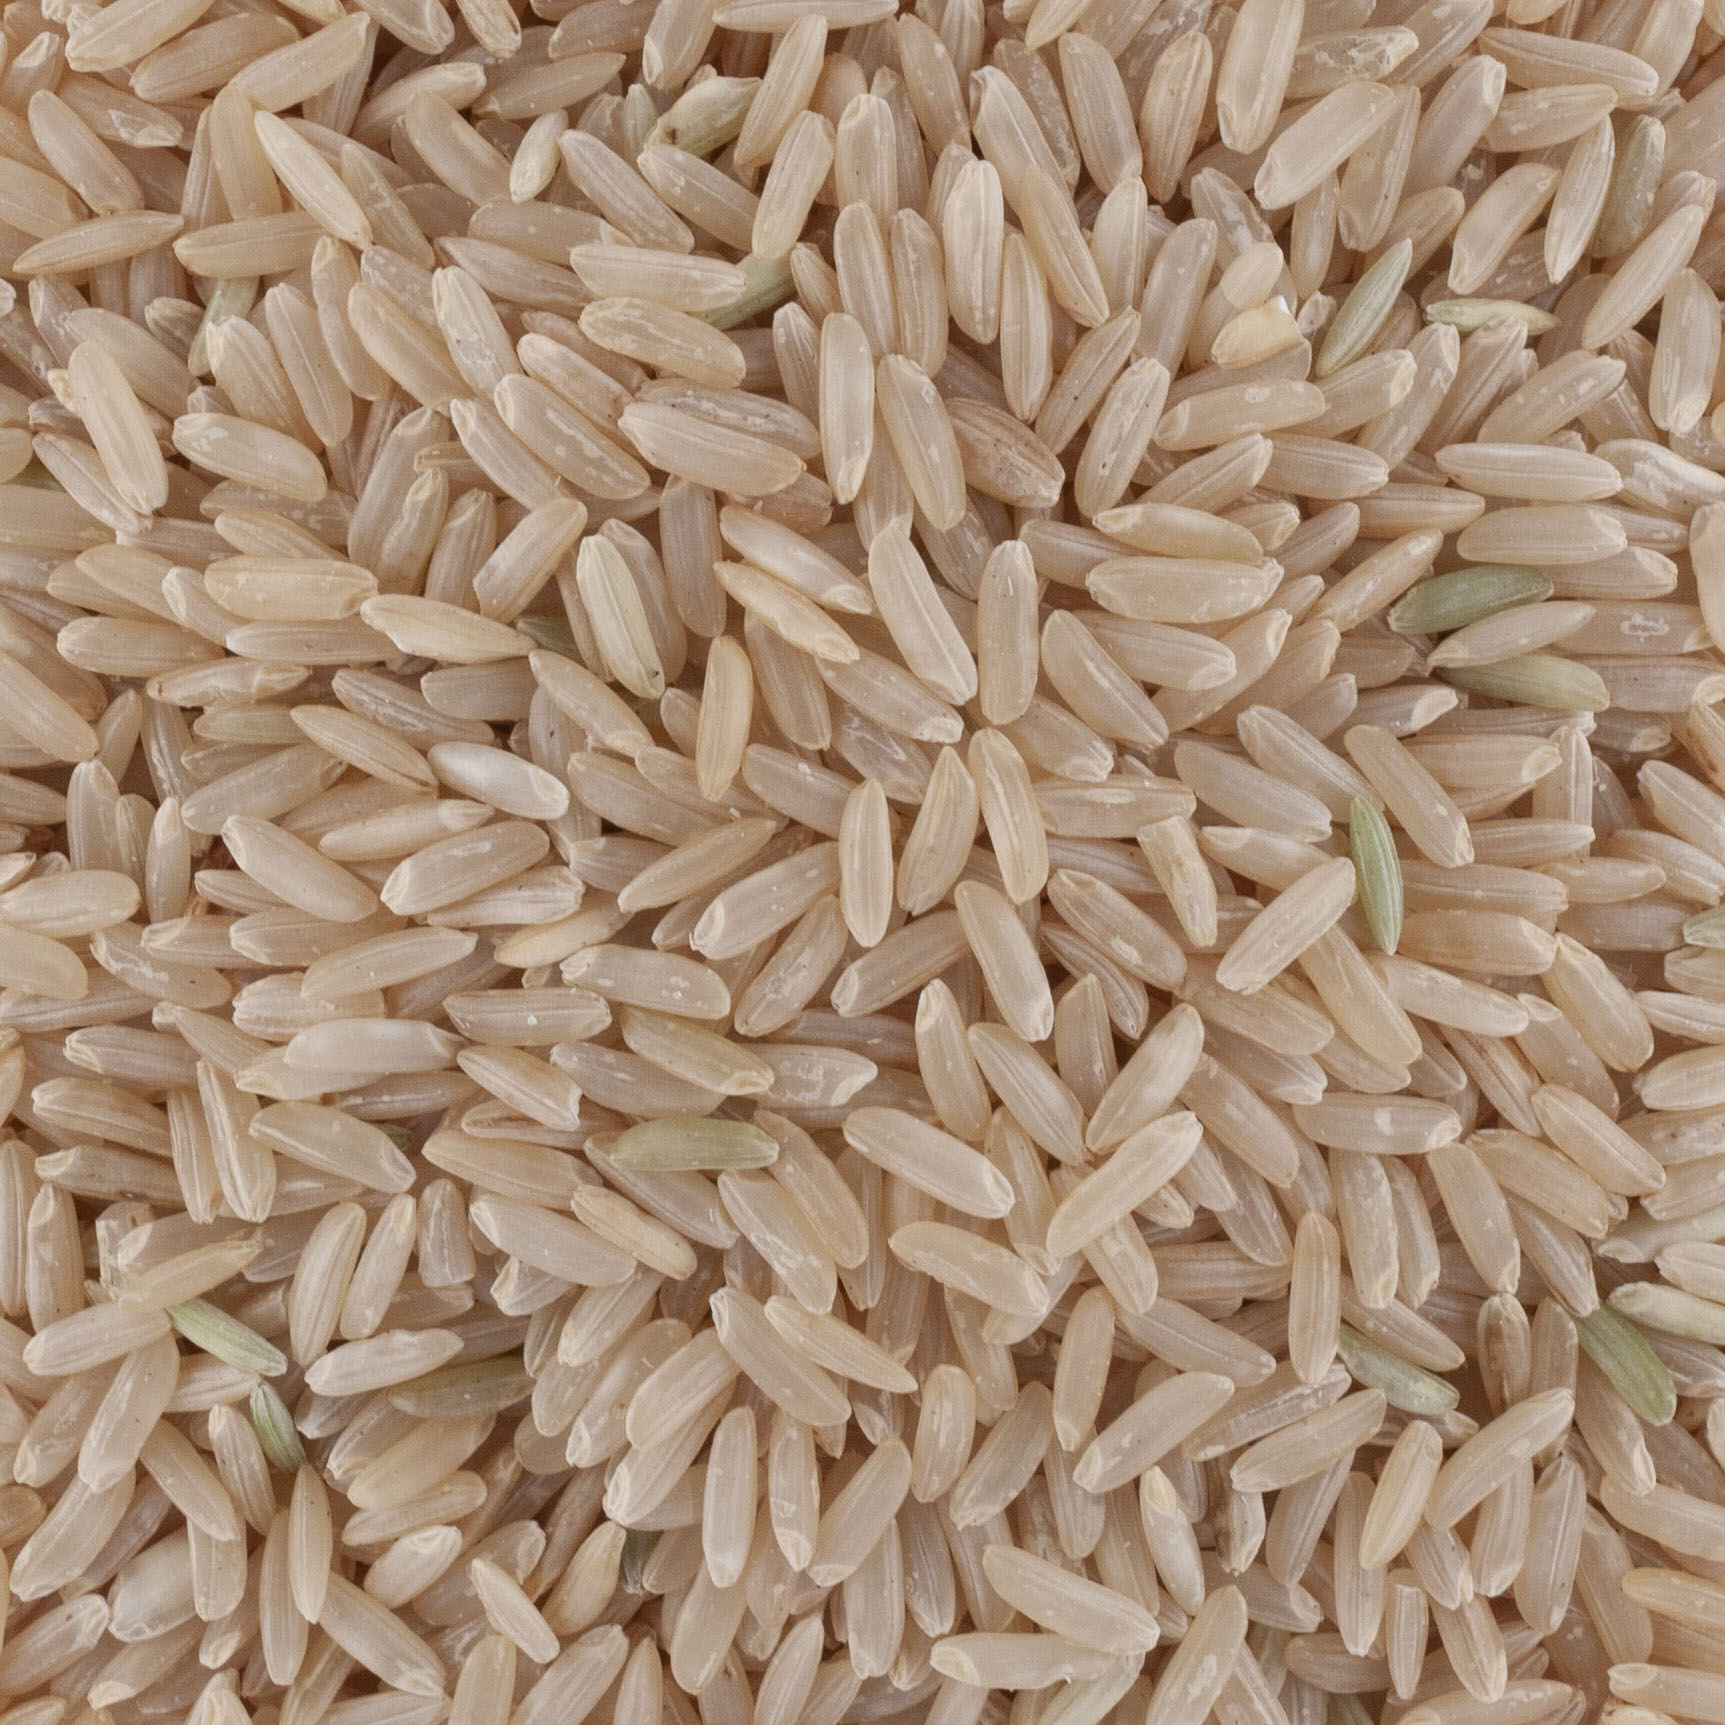 Riz long complet BIO de Camargue IGP, Pâtes, riz & céréales